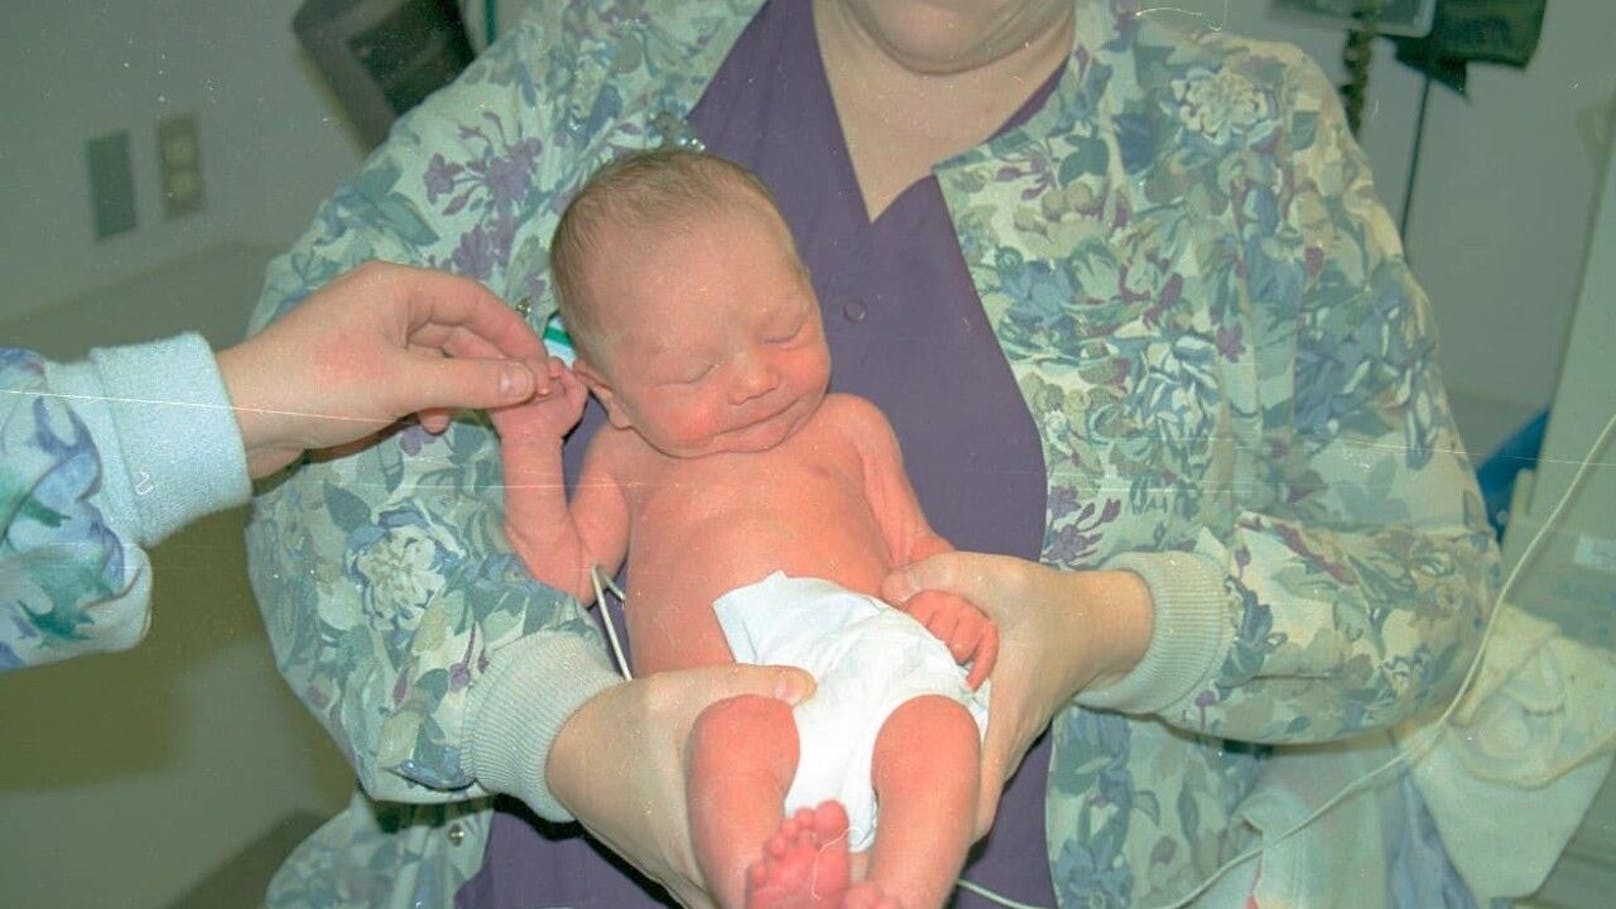 "Baby Jesus" nach seiner Ankunft im Krankenhaus - noch hat er keinen Namen